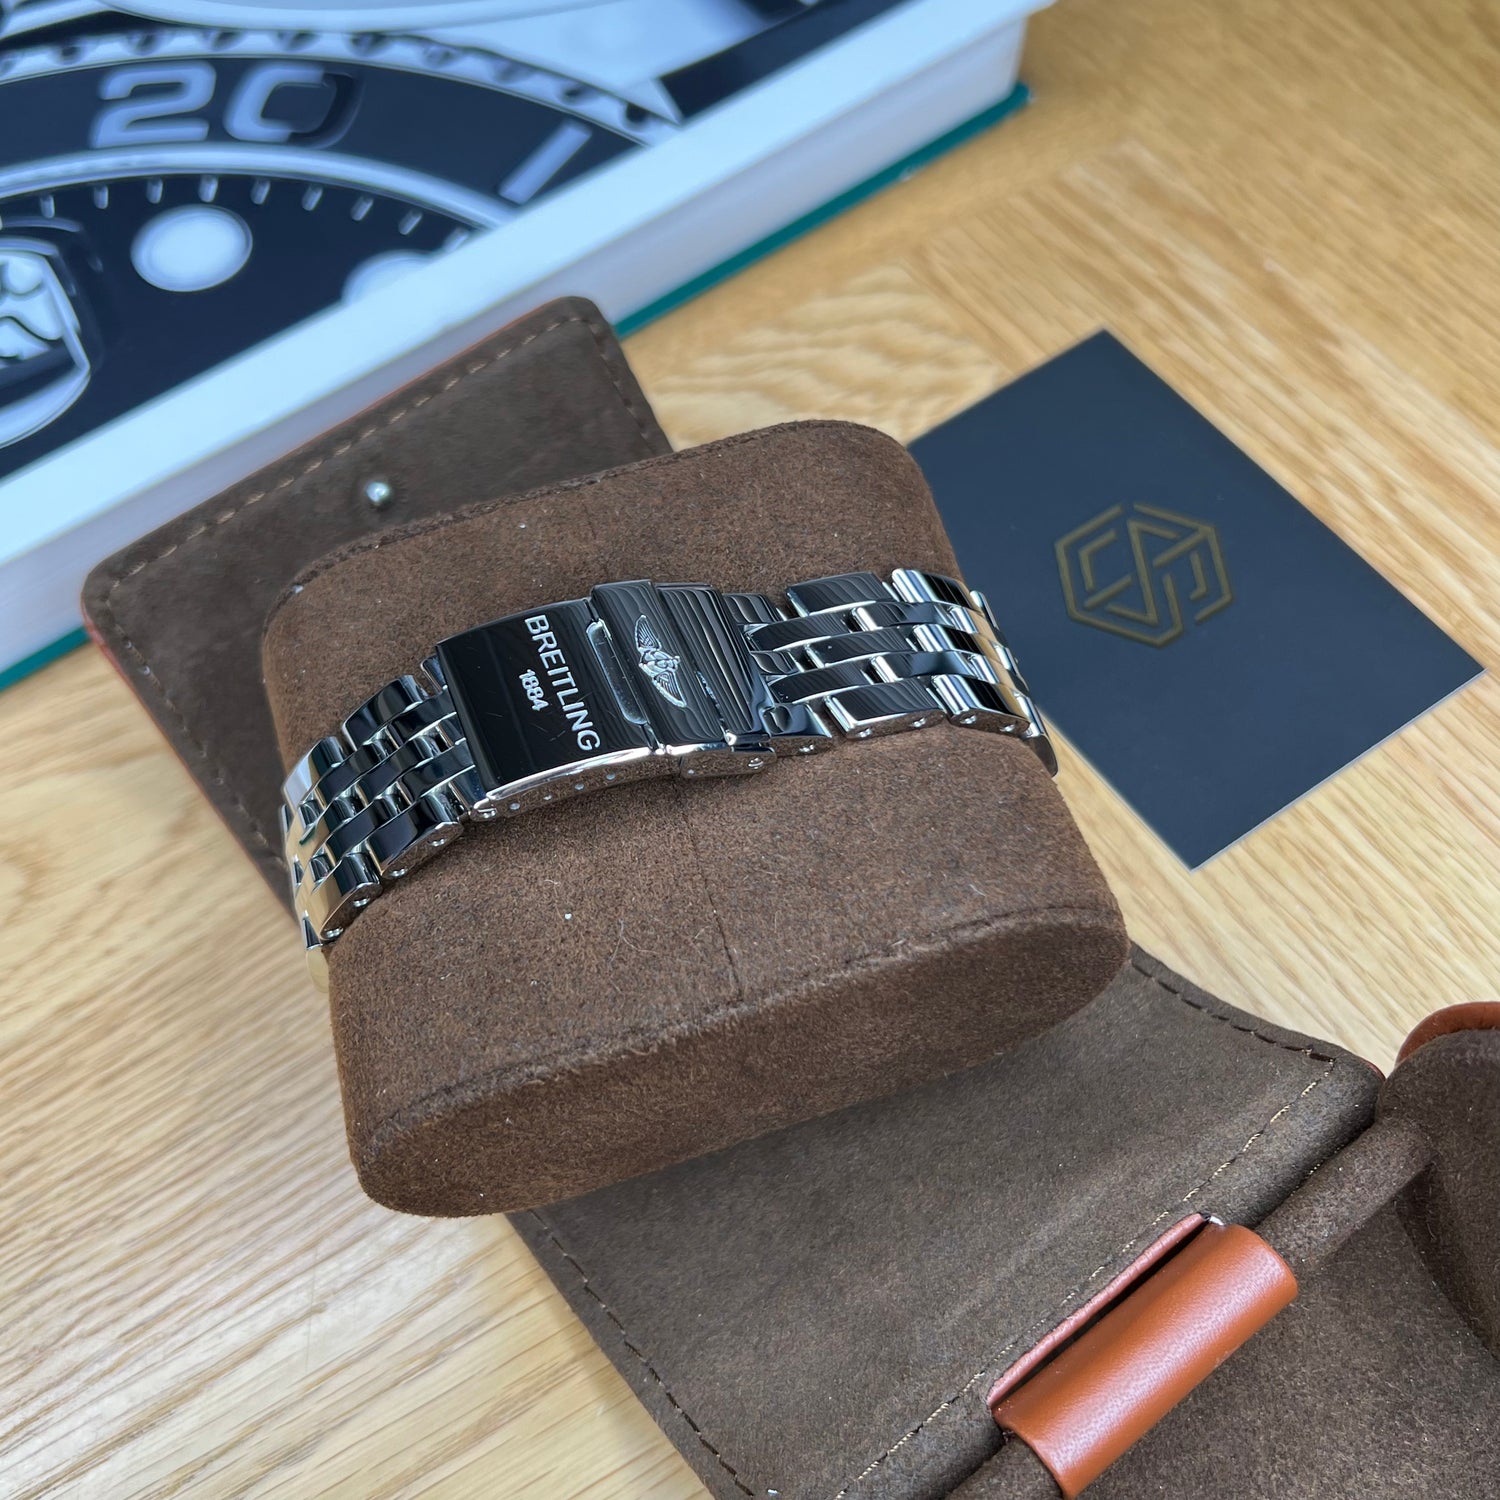 Breitling Blackbird Men's Watch A4435912/B811 2017 Full set Watch